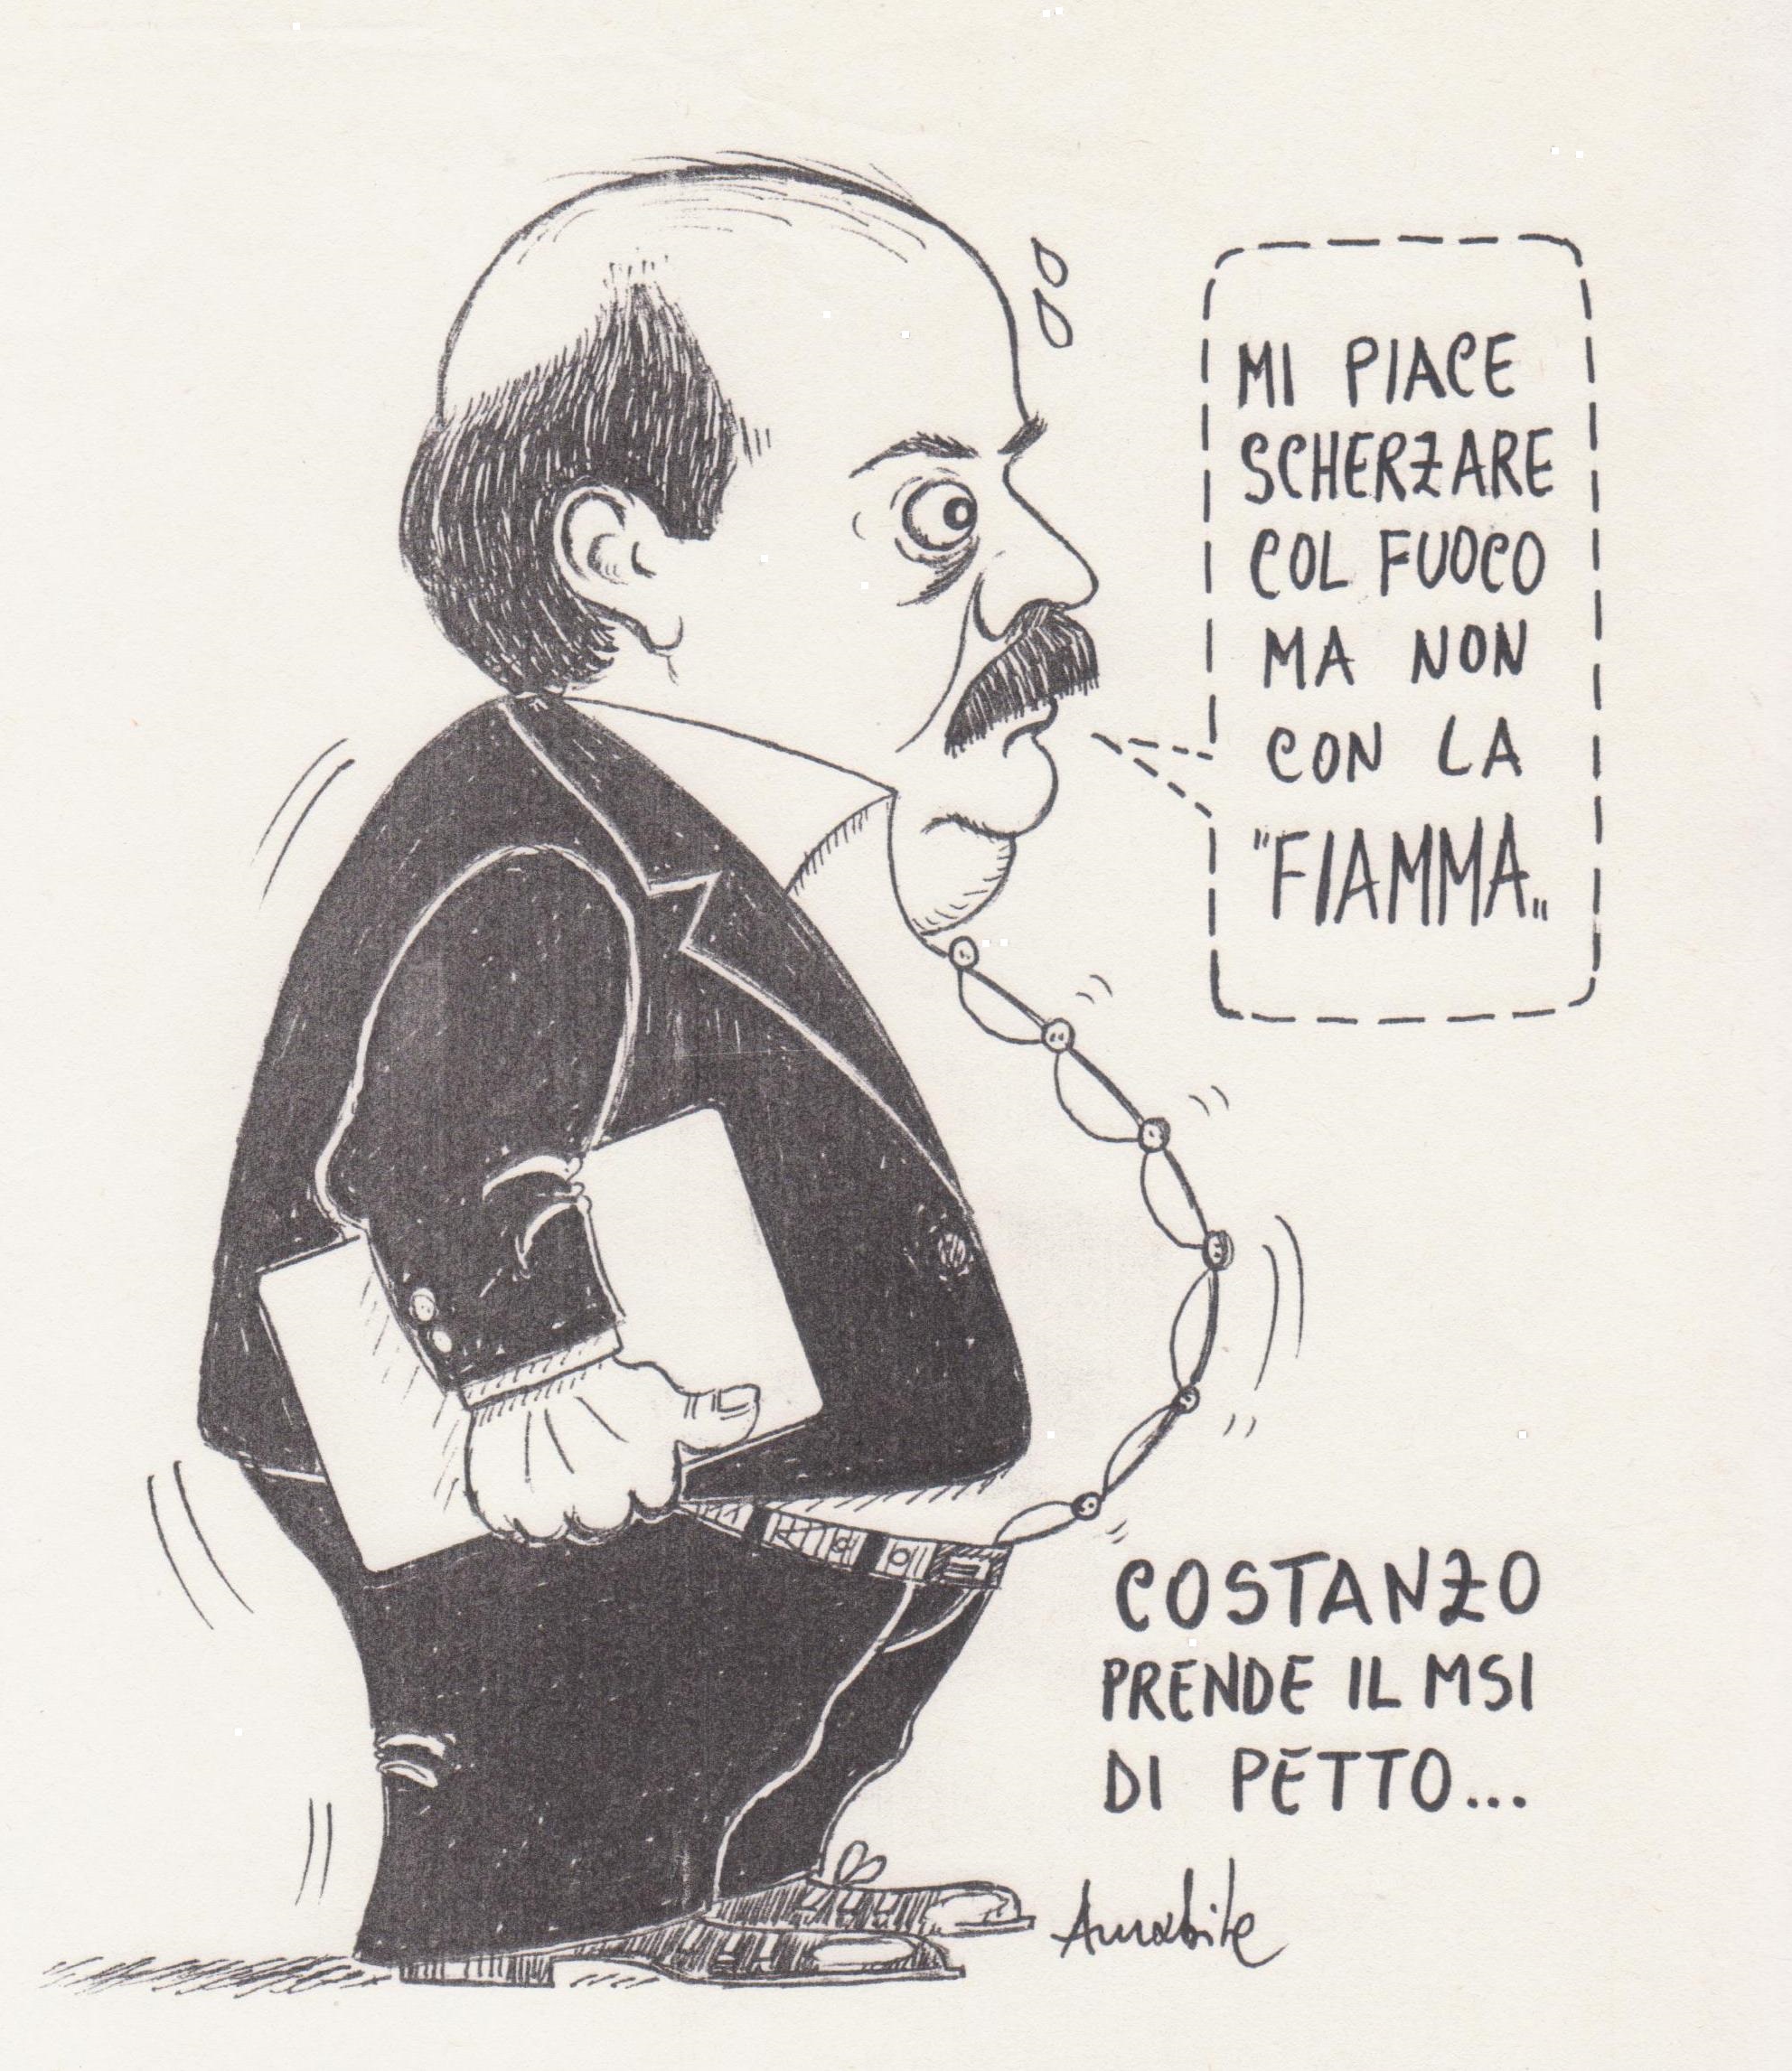 Quando Costanzo prese di petto… Bizzarra eloquente senza parole grottesca vignetta anni ‘Settanta.